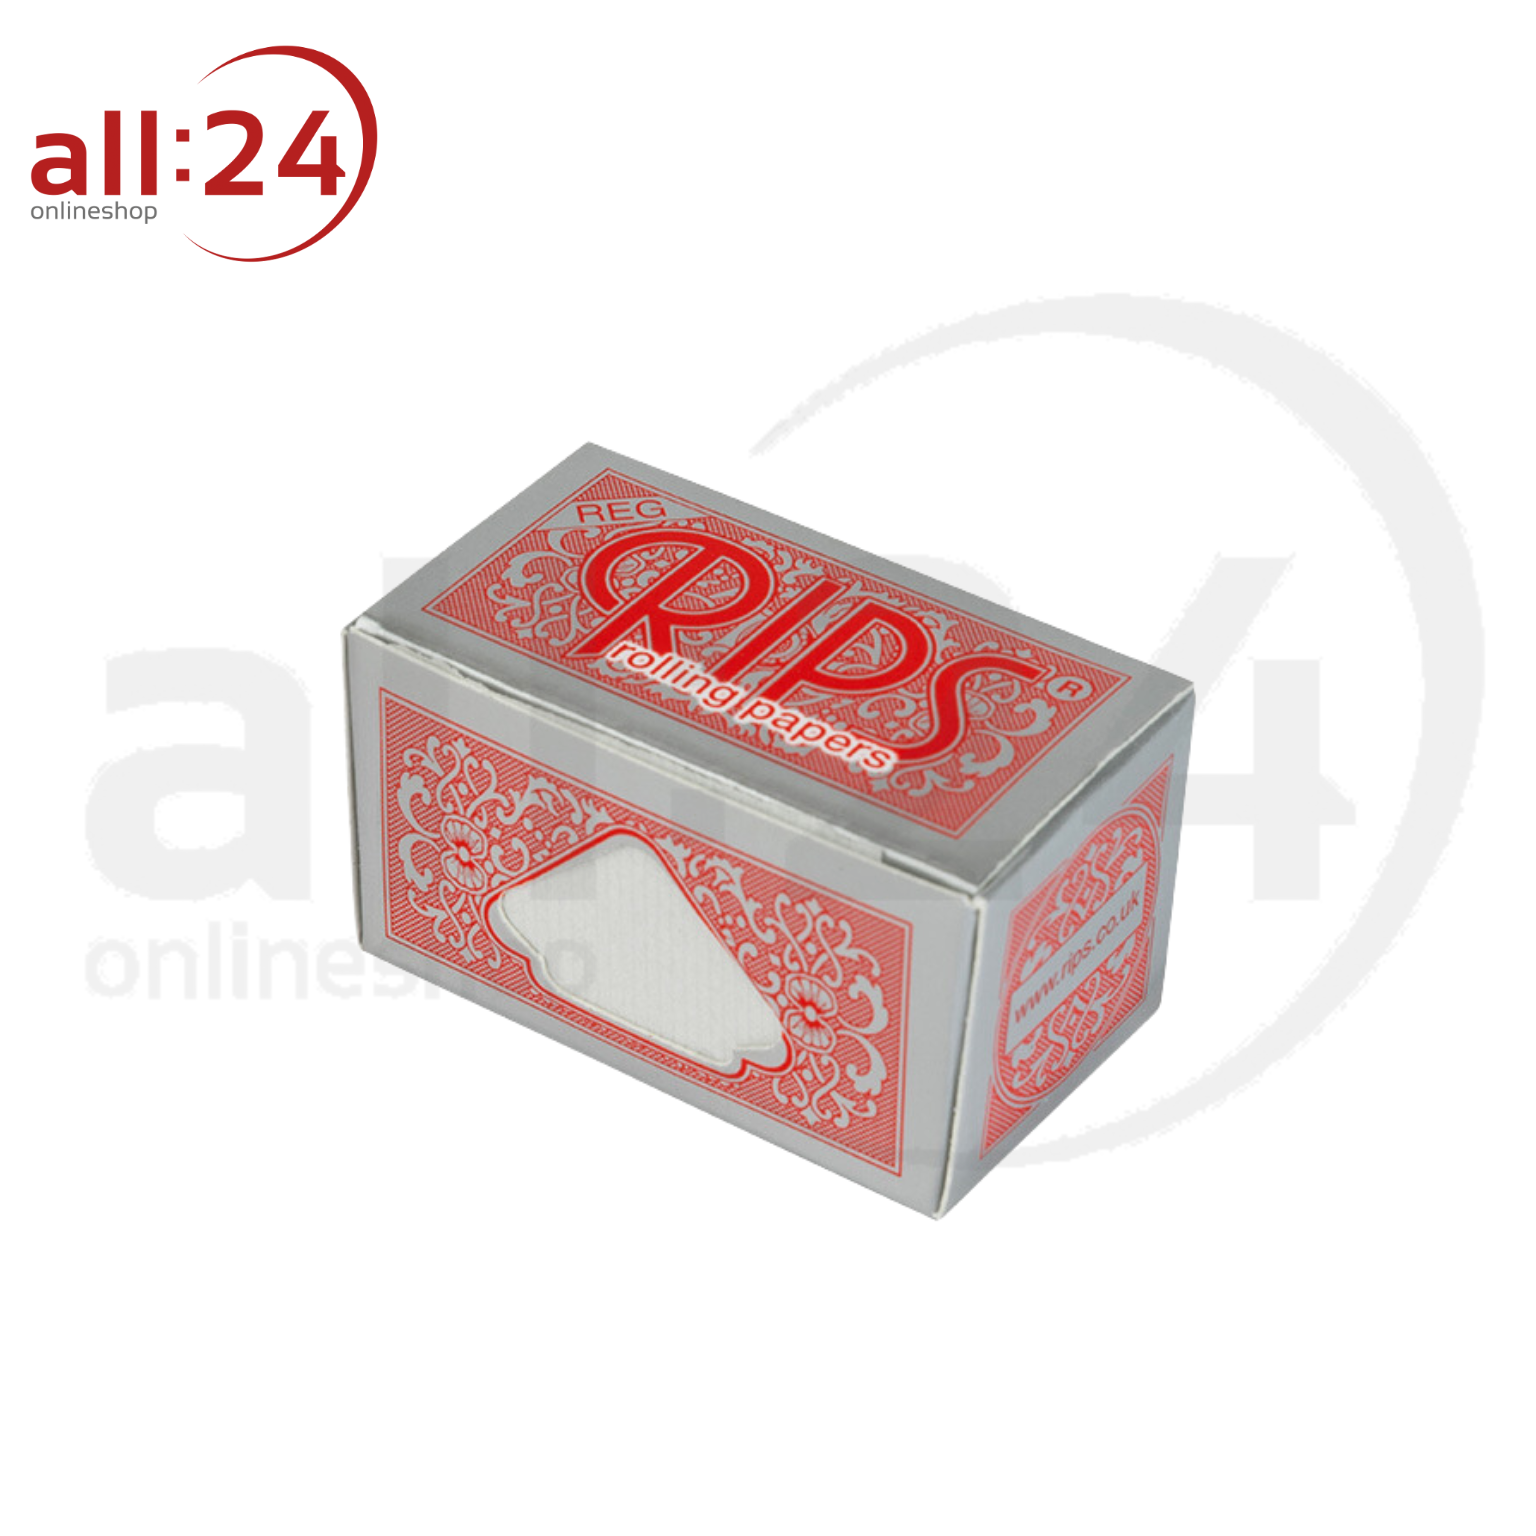 BOX RIPS Rolls Zigarettenpapier Rot, 24 Stück 